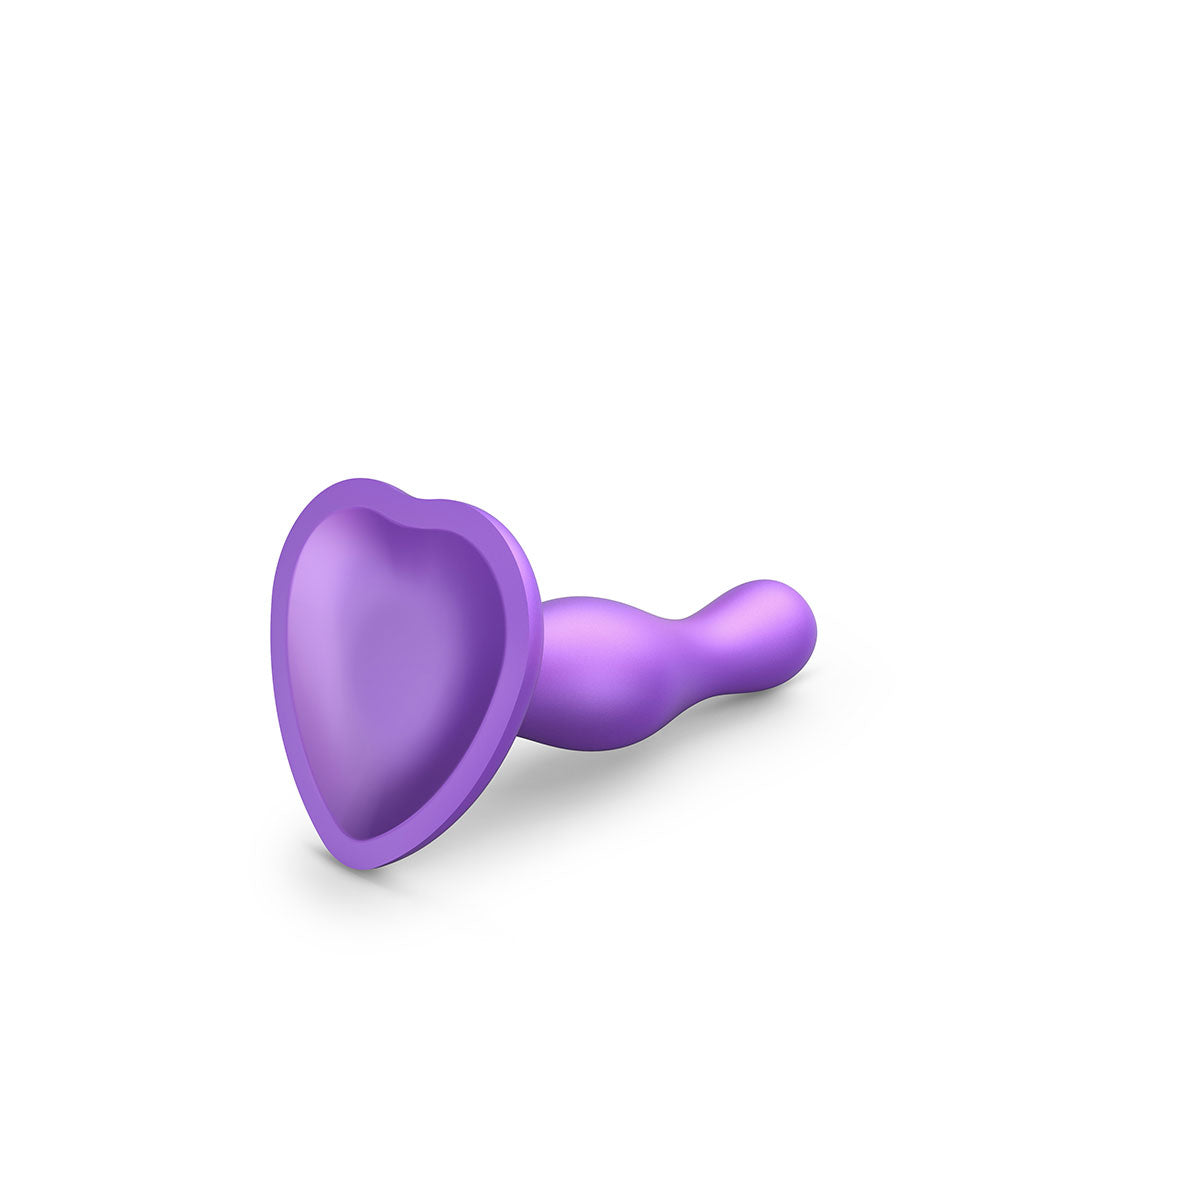 Strap-On-Me Curvy Plug Dil Metallic Purple - Large